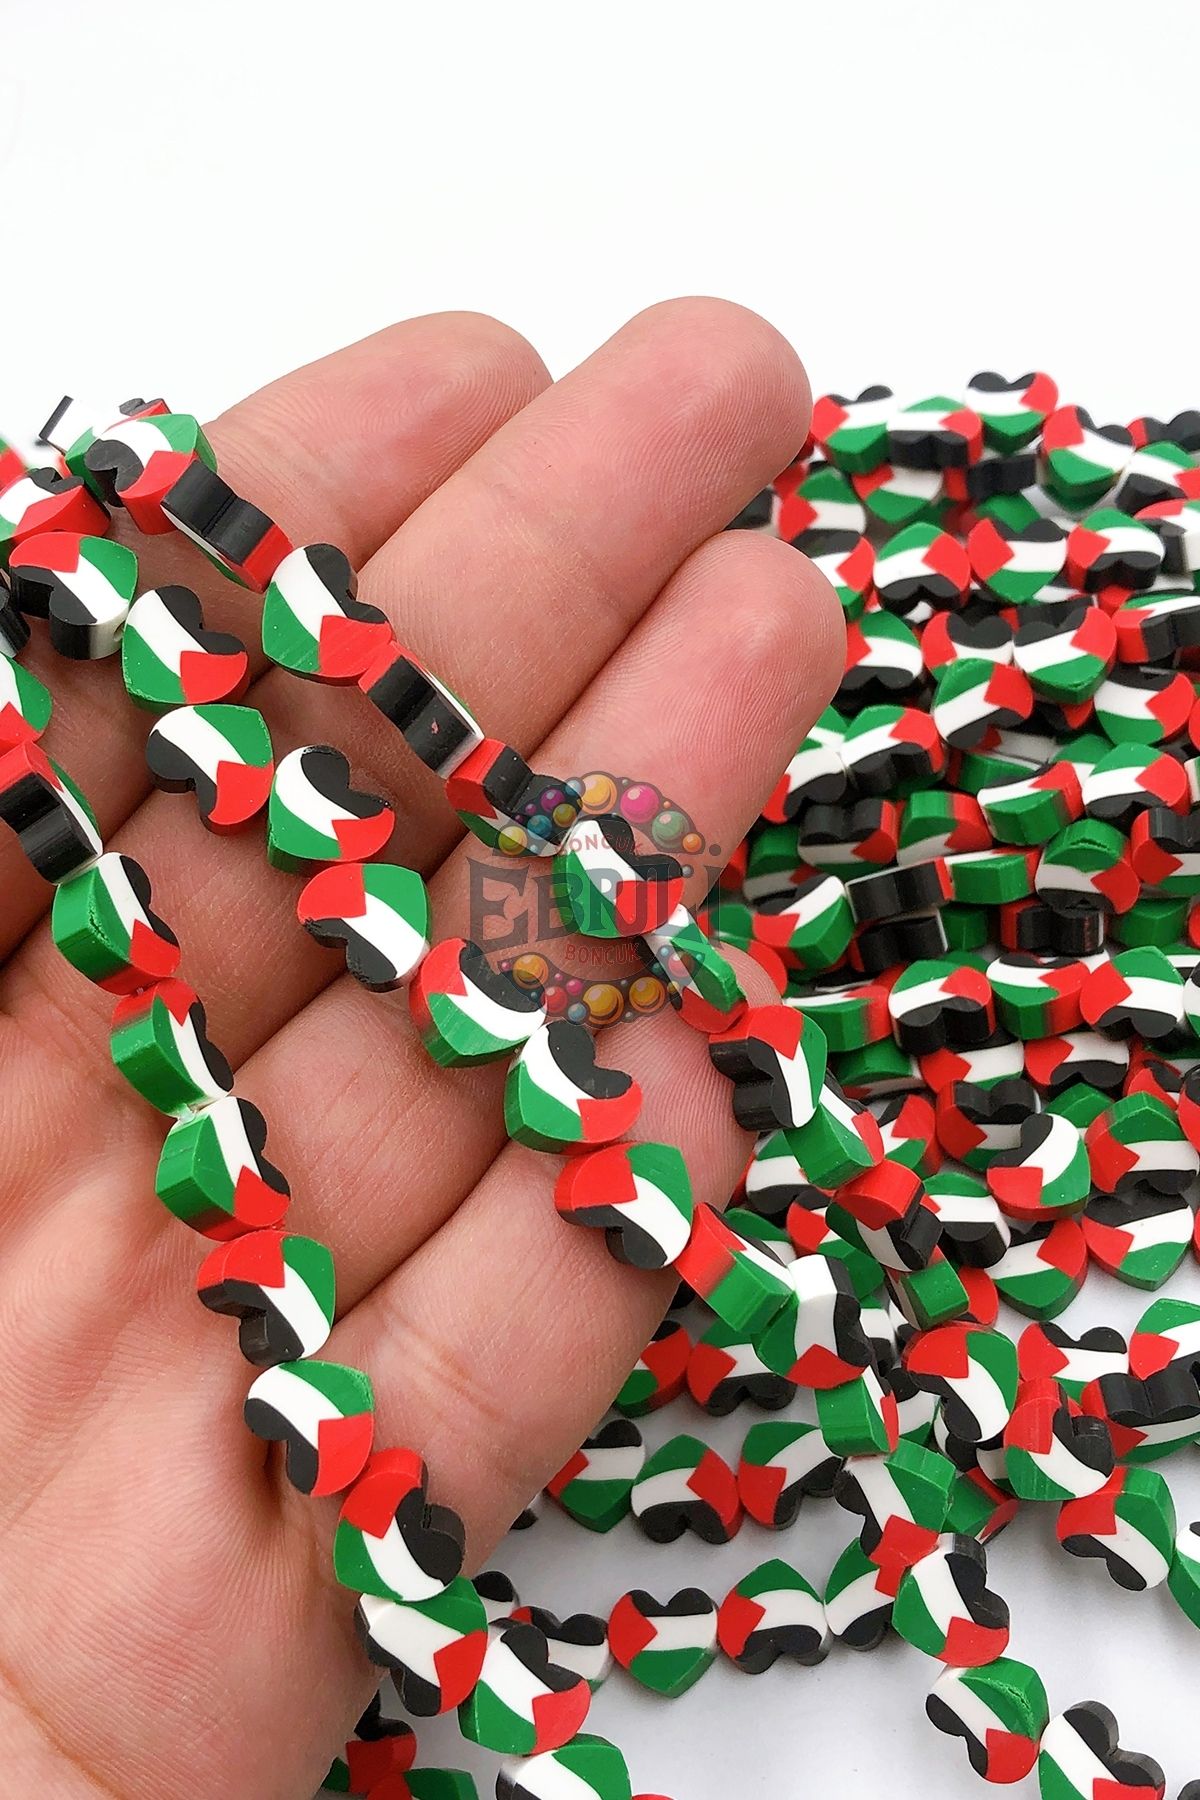 Ebruli Boncuk Filistin Kalp Bayrak Fimo Boncuk Takı Yapımı Bead (100 Adet)